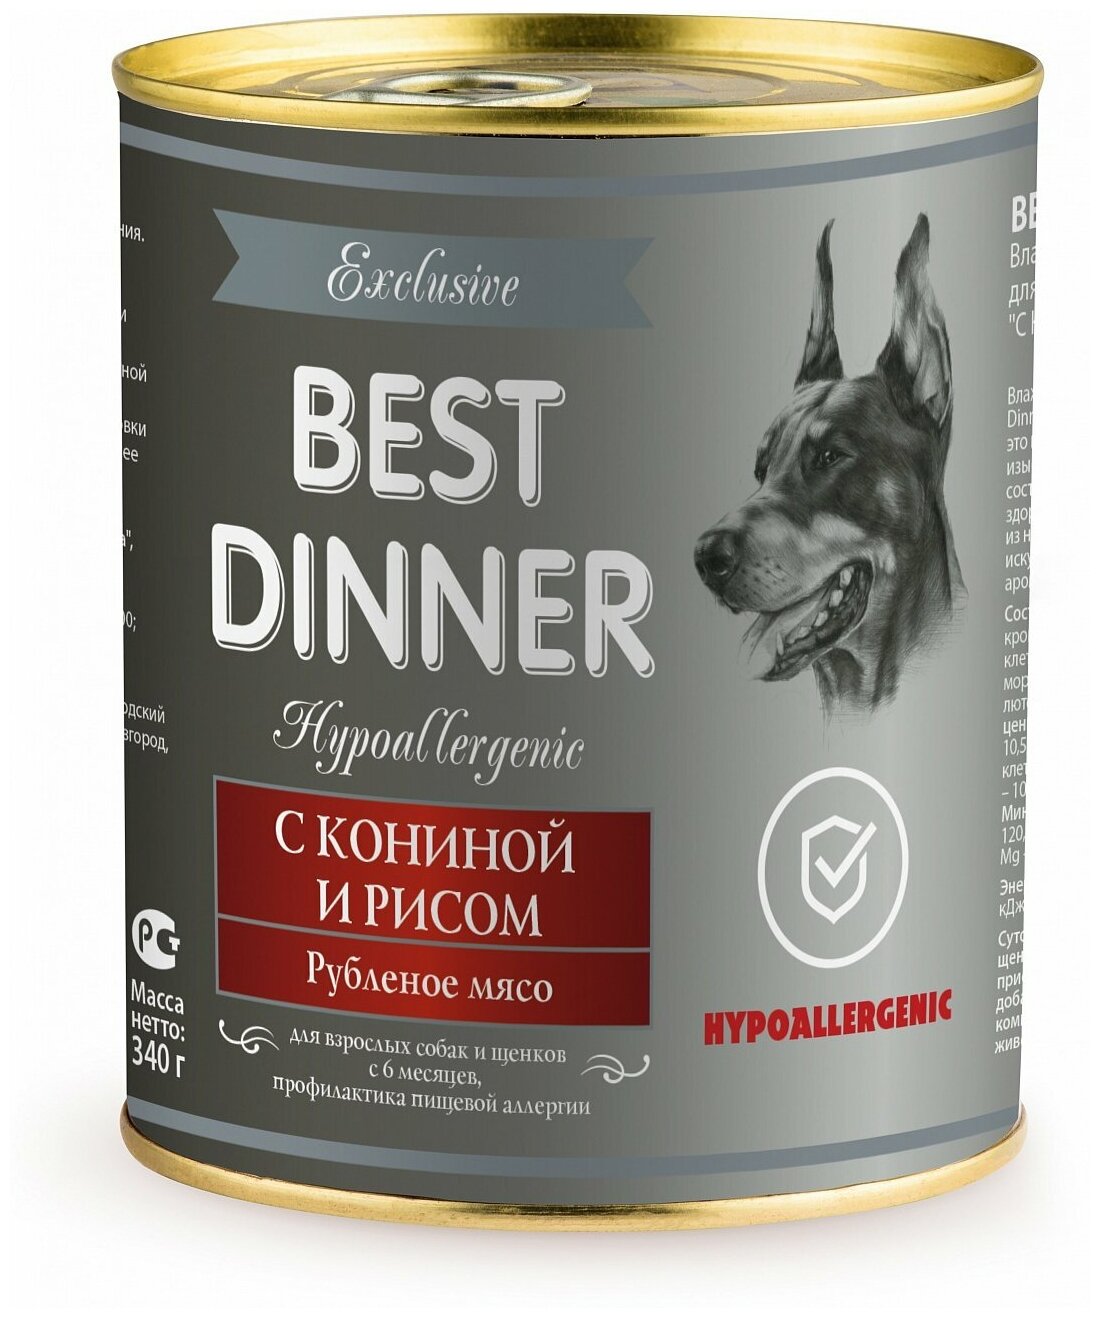 Влажный корм для собак Best Dinner Exclusive Hypoallergenic, гипоаллергенный, конина, с рисом 340 г